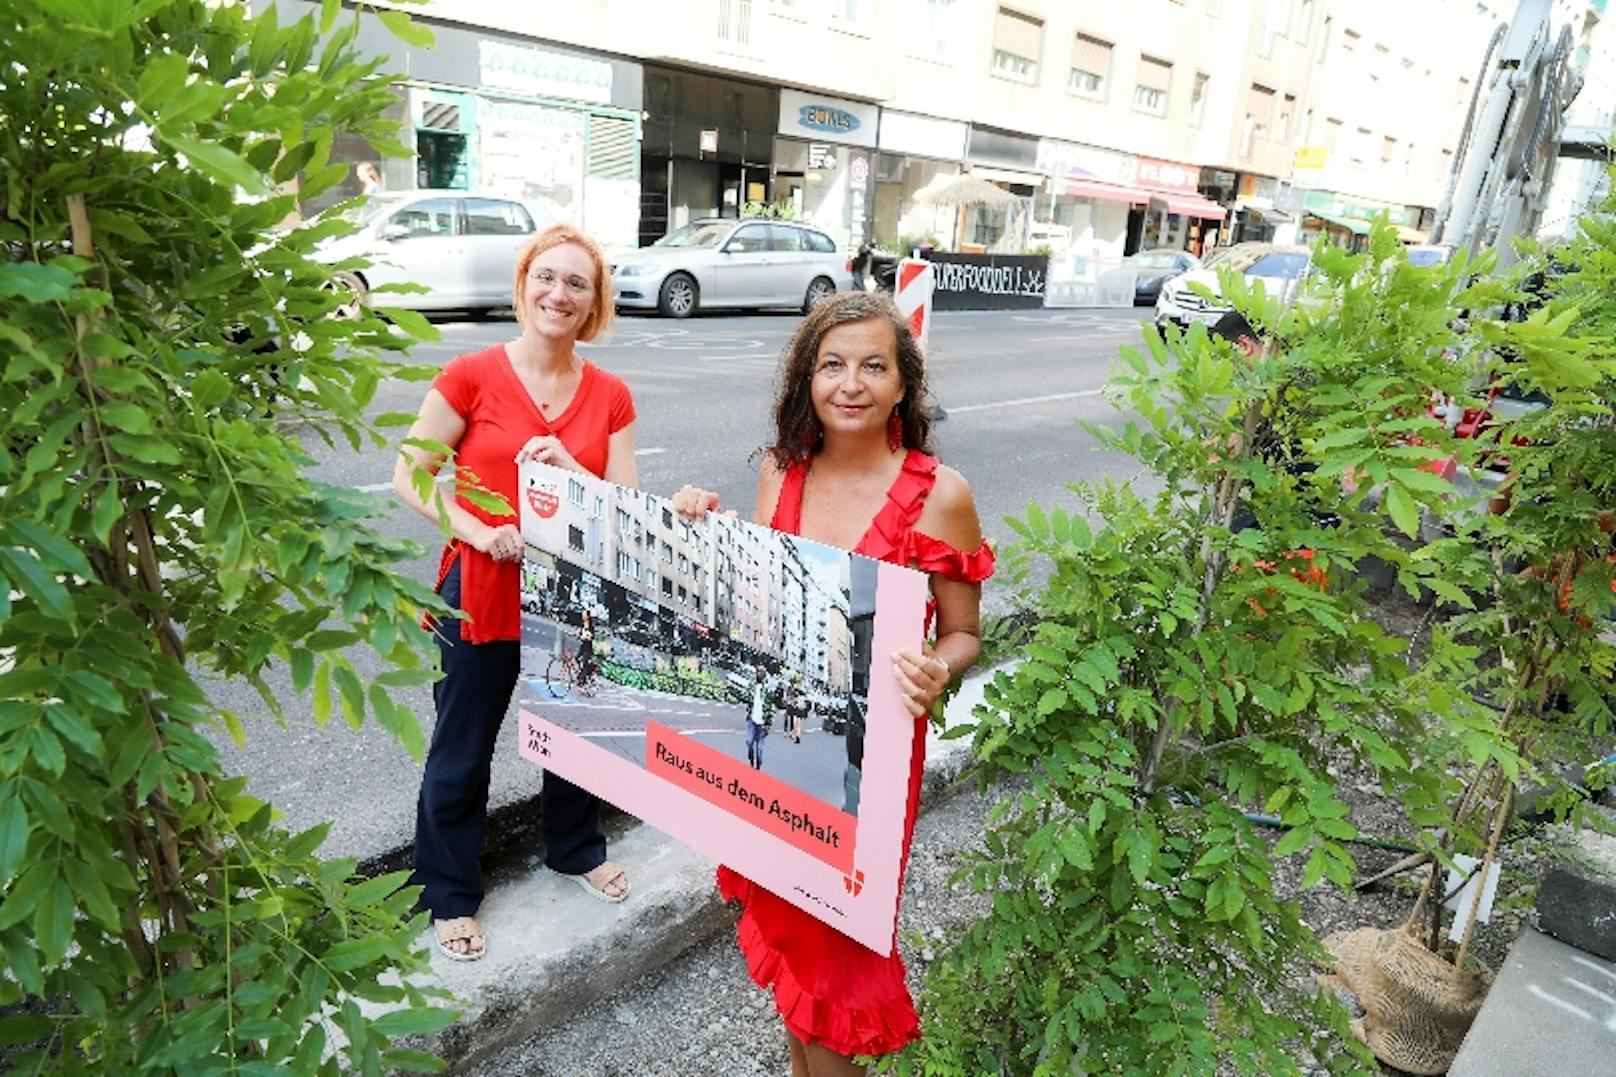 Grün statt grau: Stadt Wien will den Asphalt aufbrechen